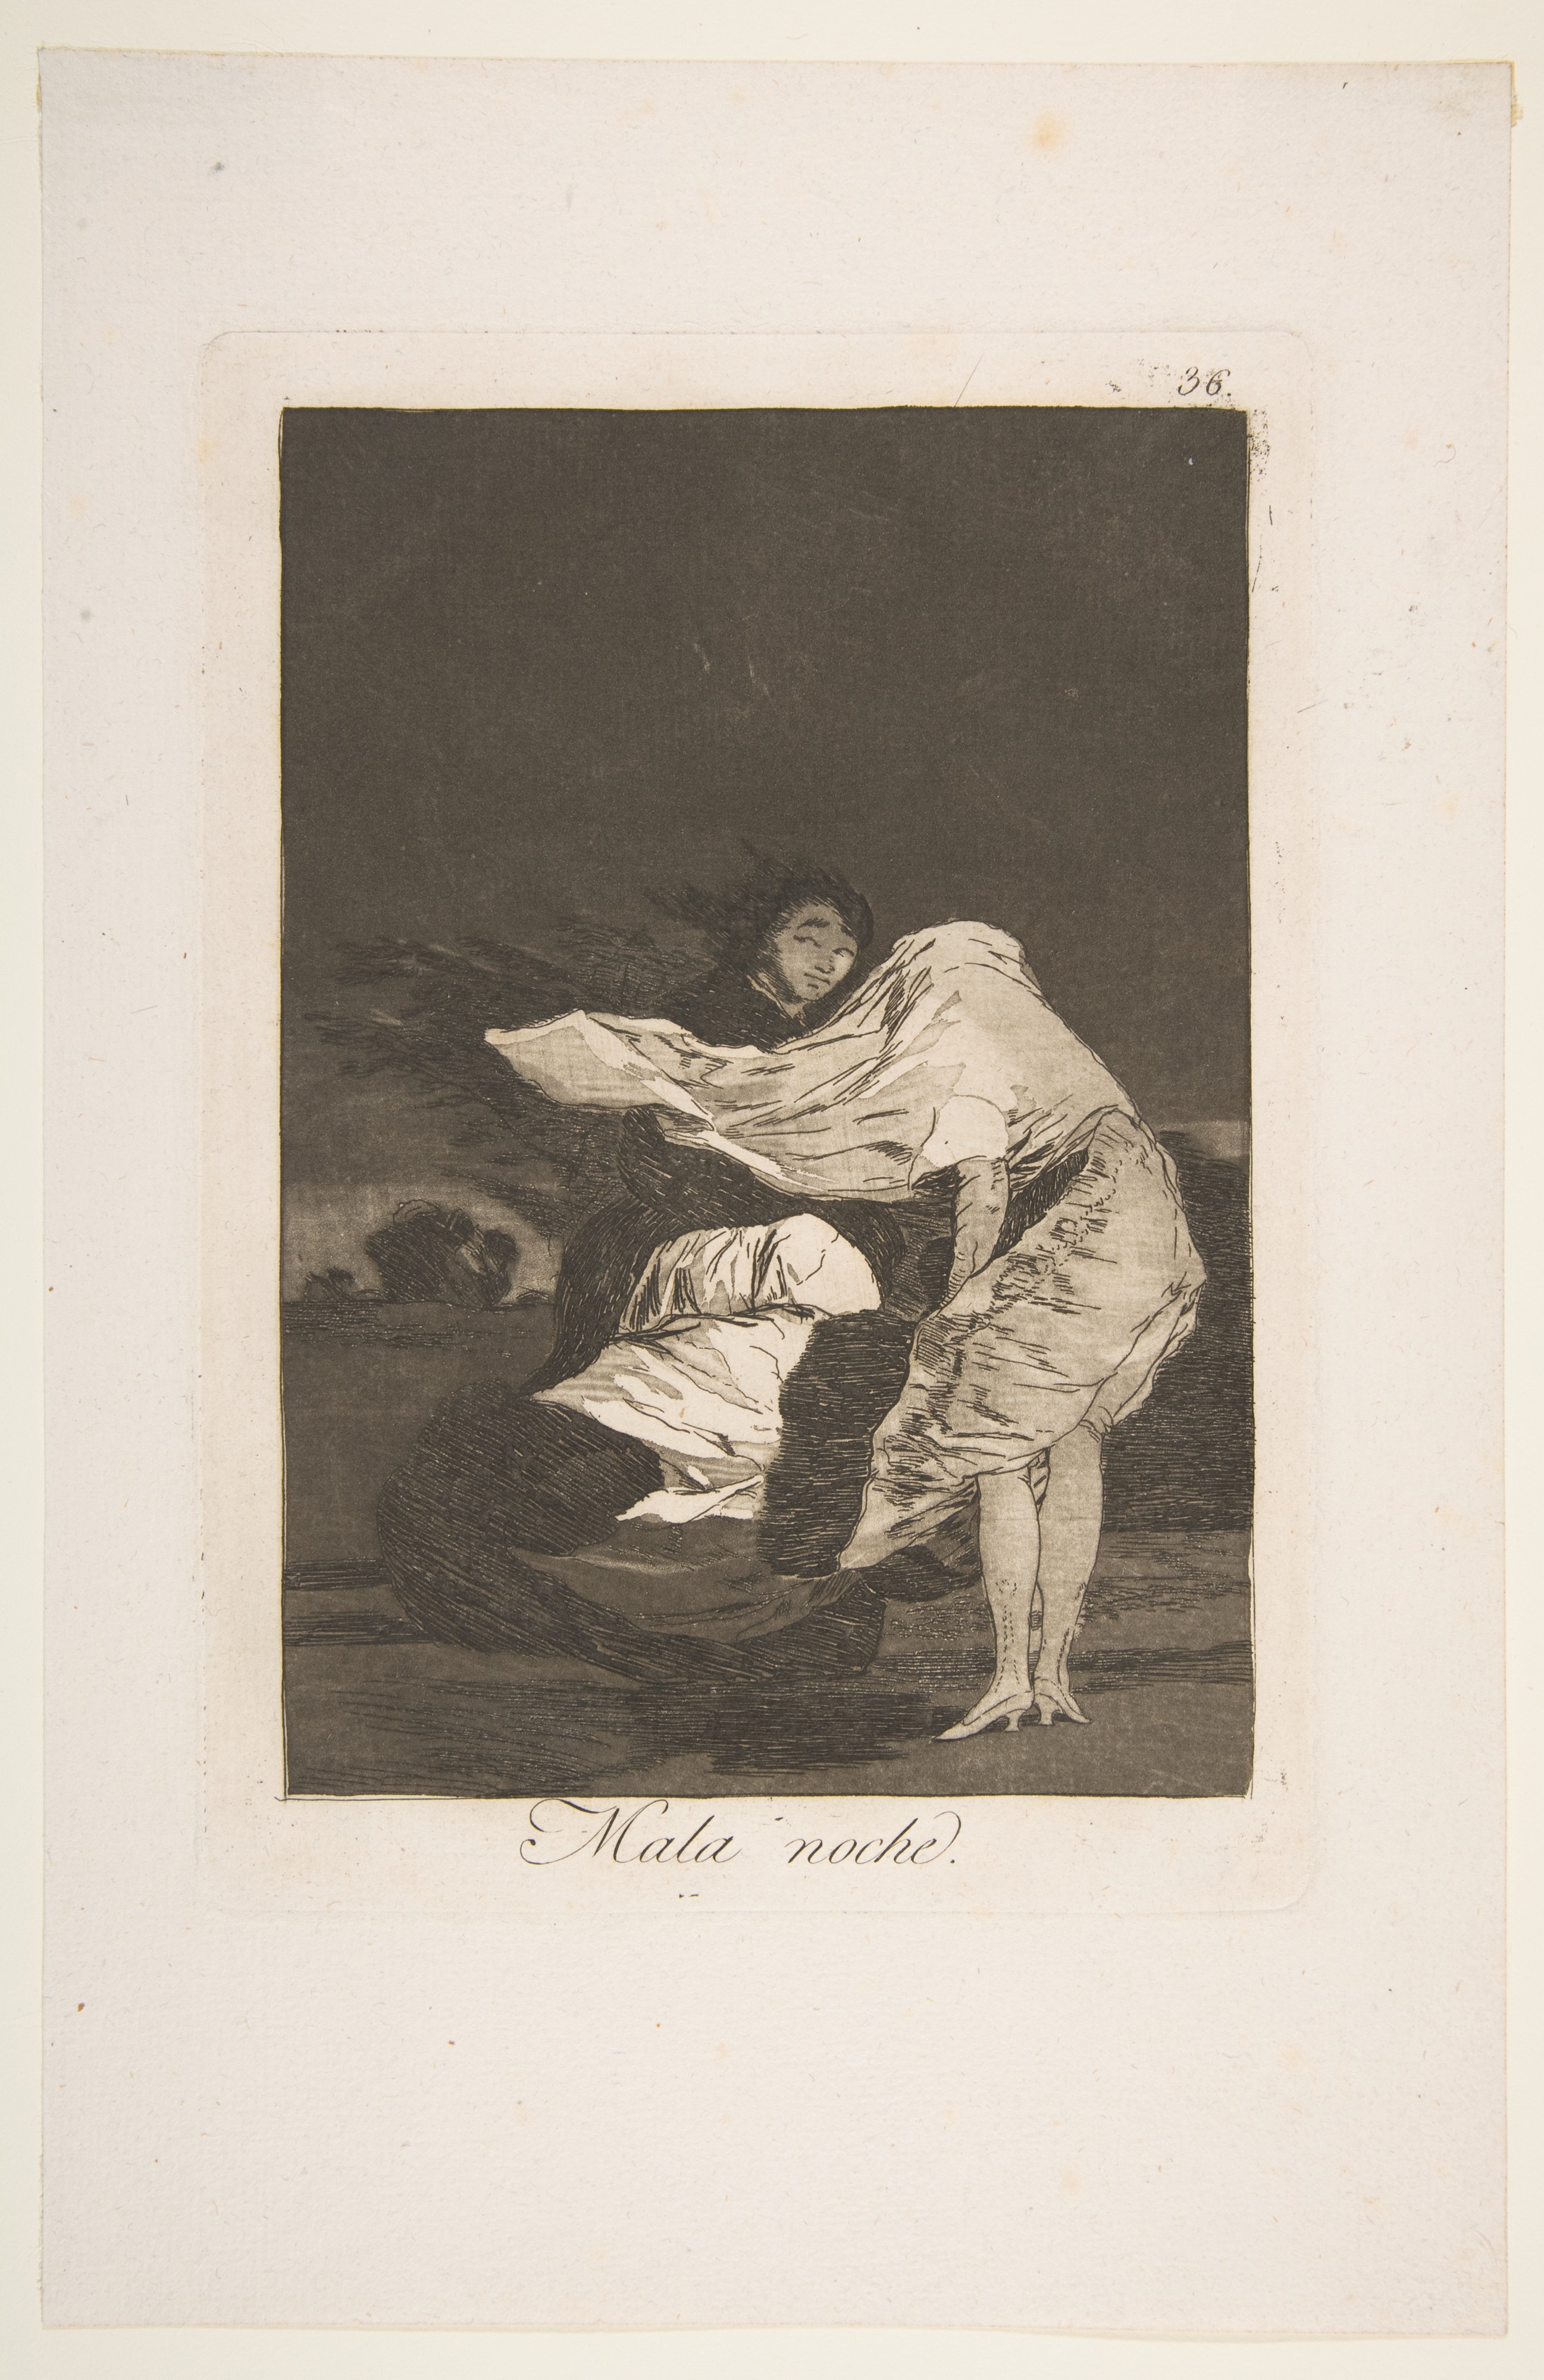 Goya (Francisco de Goya y Lucientes) Artworks collected in Metmuseum